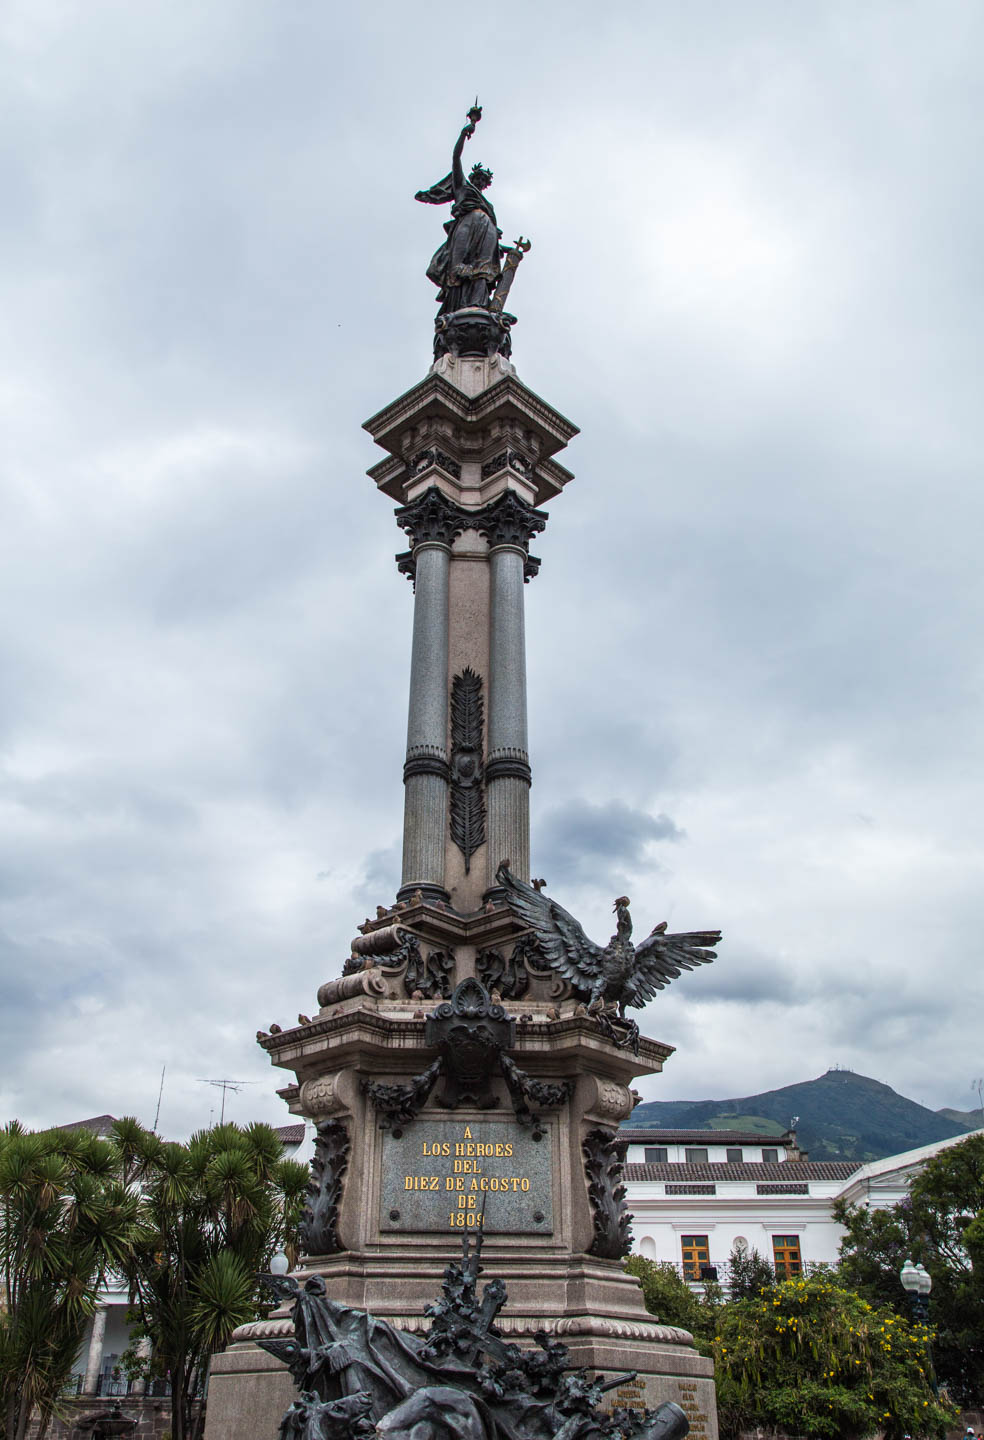 Independence monument at Plaza Grande, Quito, Ecuador